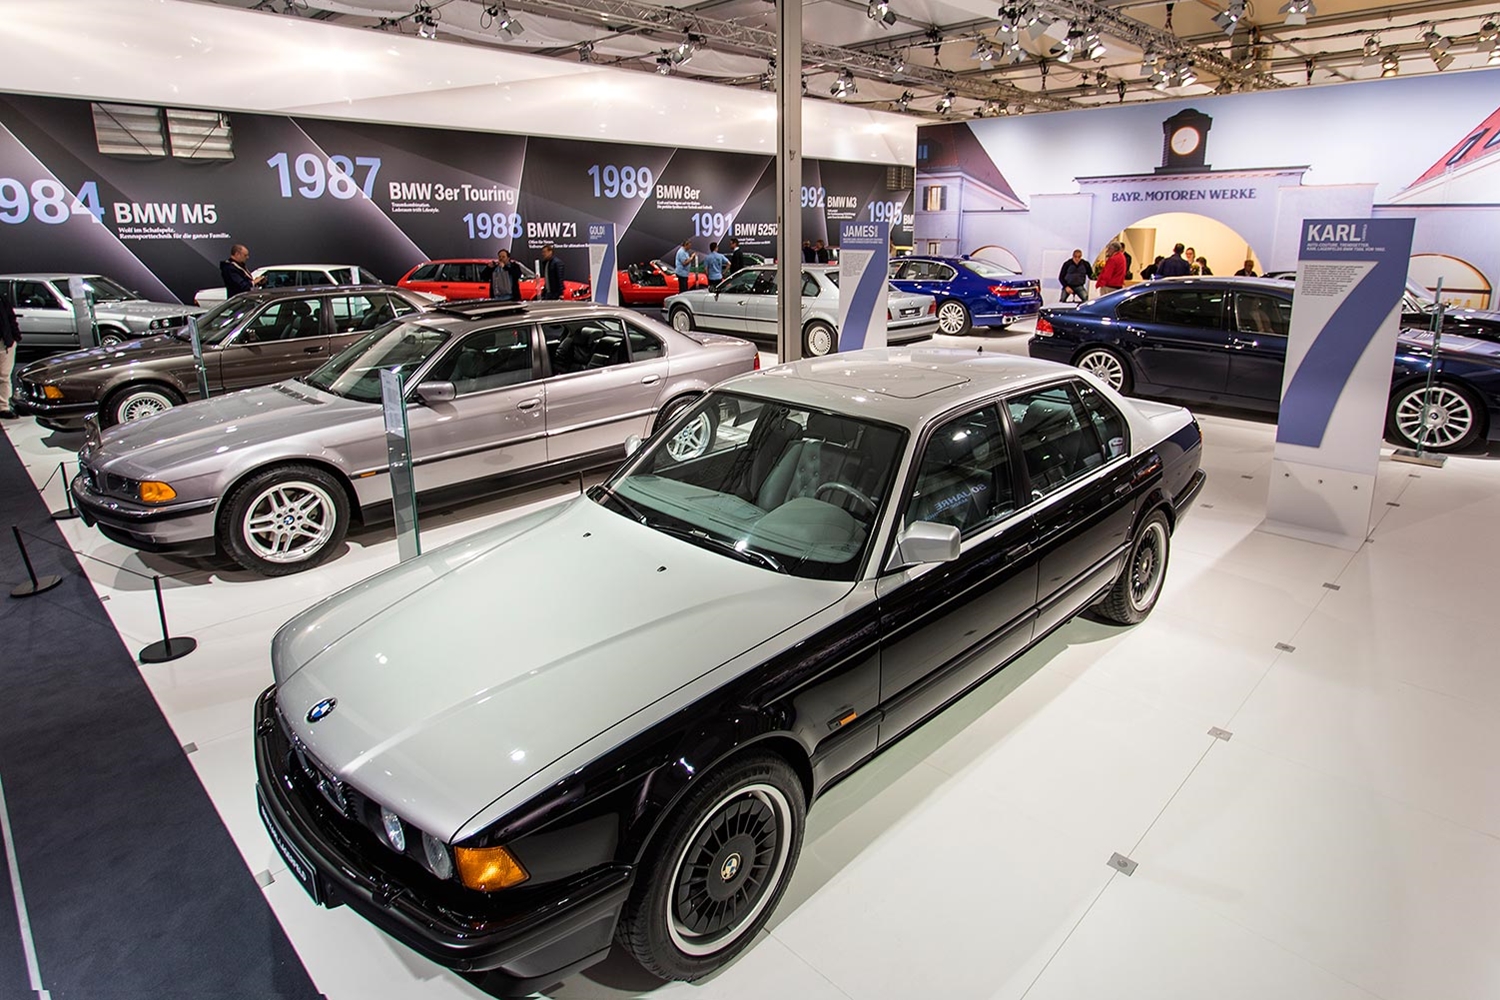 Két egyedi BMW-t is tervezett Karl Lagerfeld 4